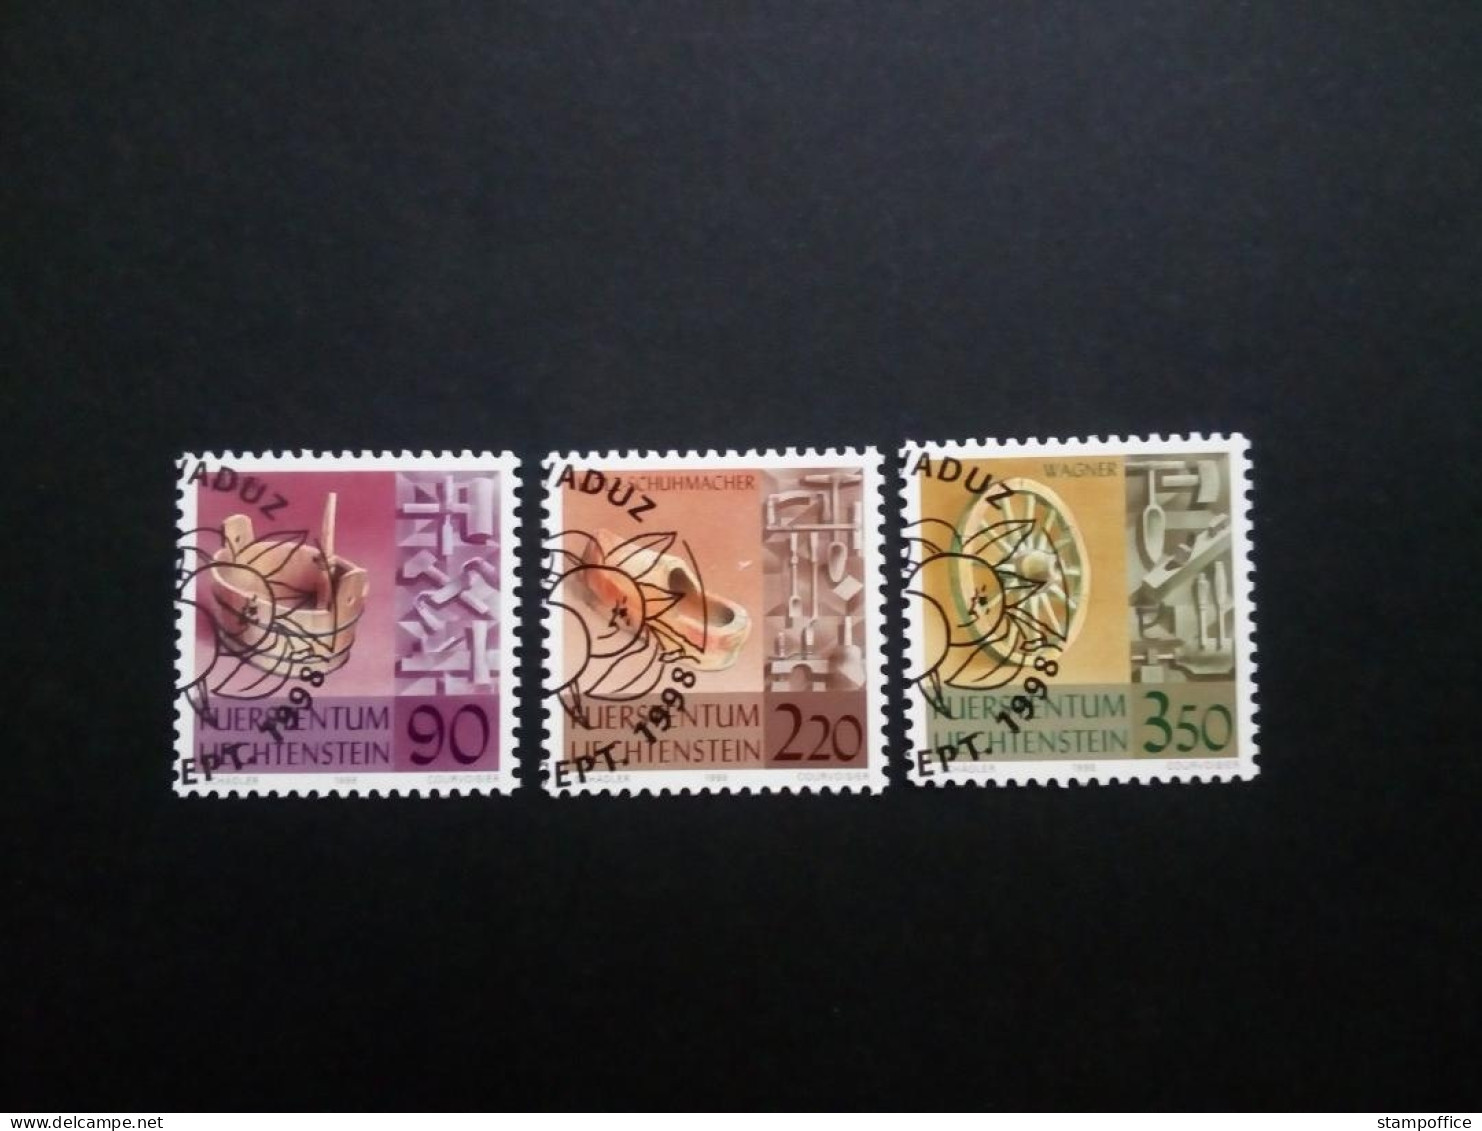 LIECHTENSTEIN MI-NR. 1180-1182 GESTEMPELT ALTES HANDWERK 1998 KÜFER WAGNER - Used Stamps